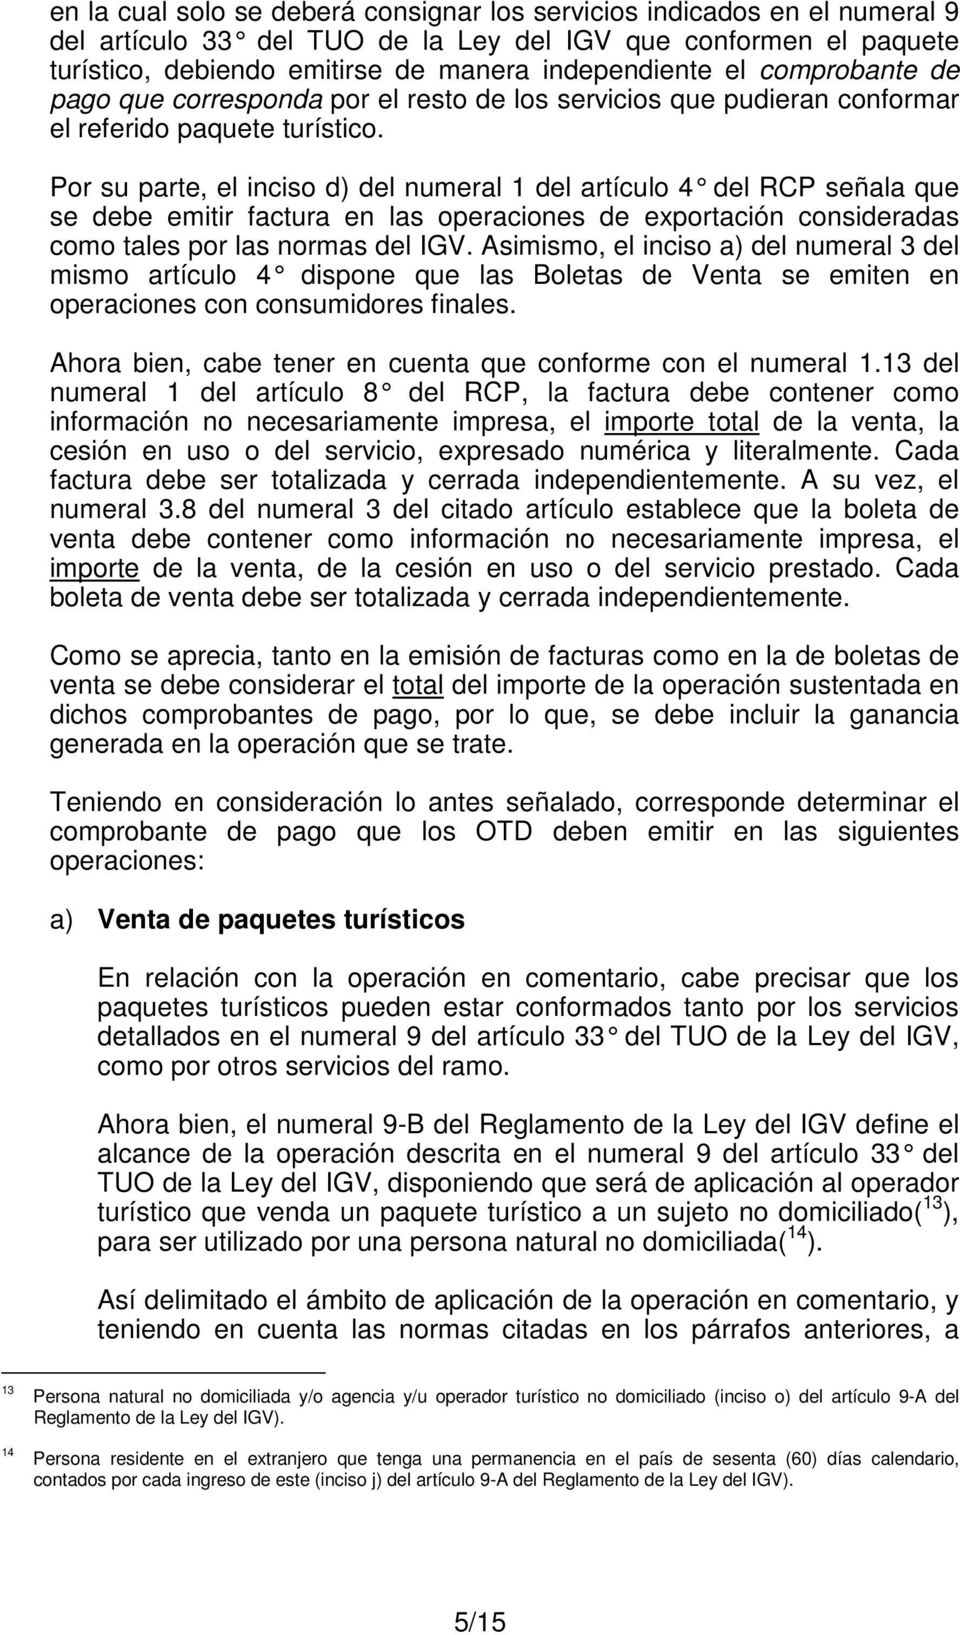 Por su parte, el inciso d) del numeral 1 del artículo 4 del RCP señala que se debe emitir factura en las operaciones de exportación consideradas como tales por las normas del IGV.